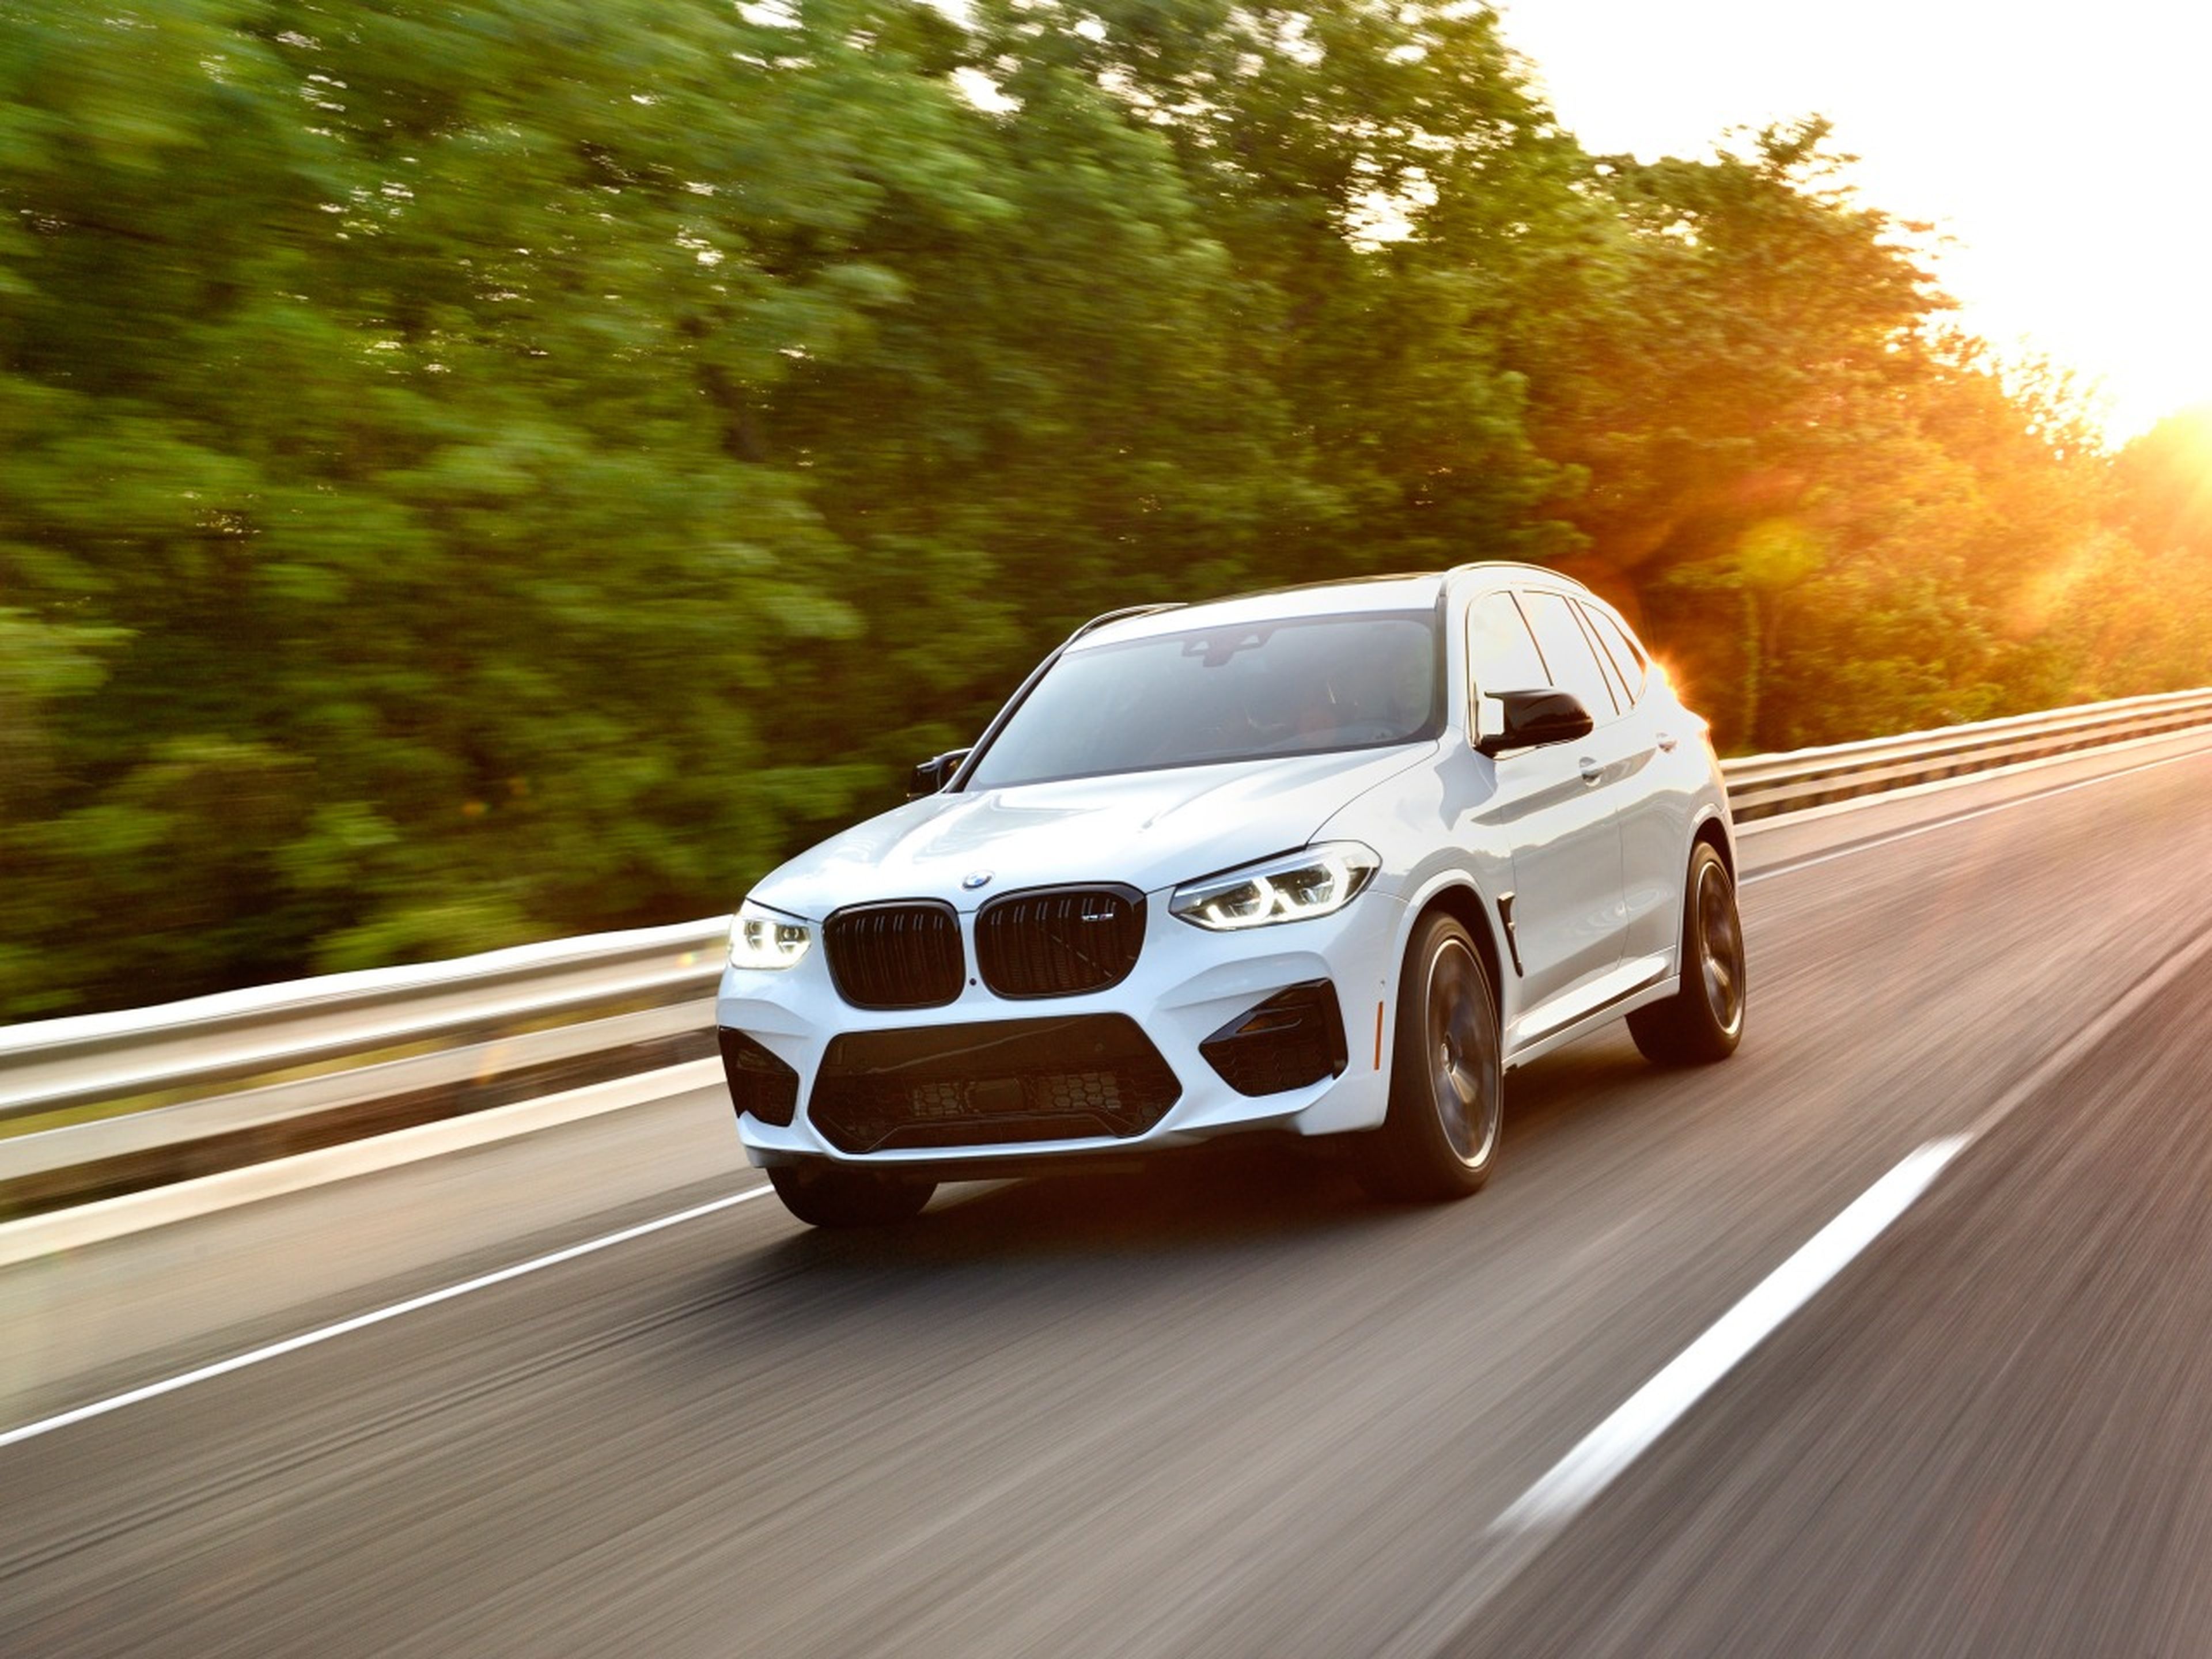 Imagen dinámica del BMW X3 M Competition en carretera